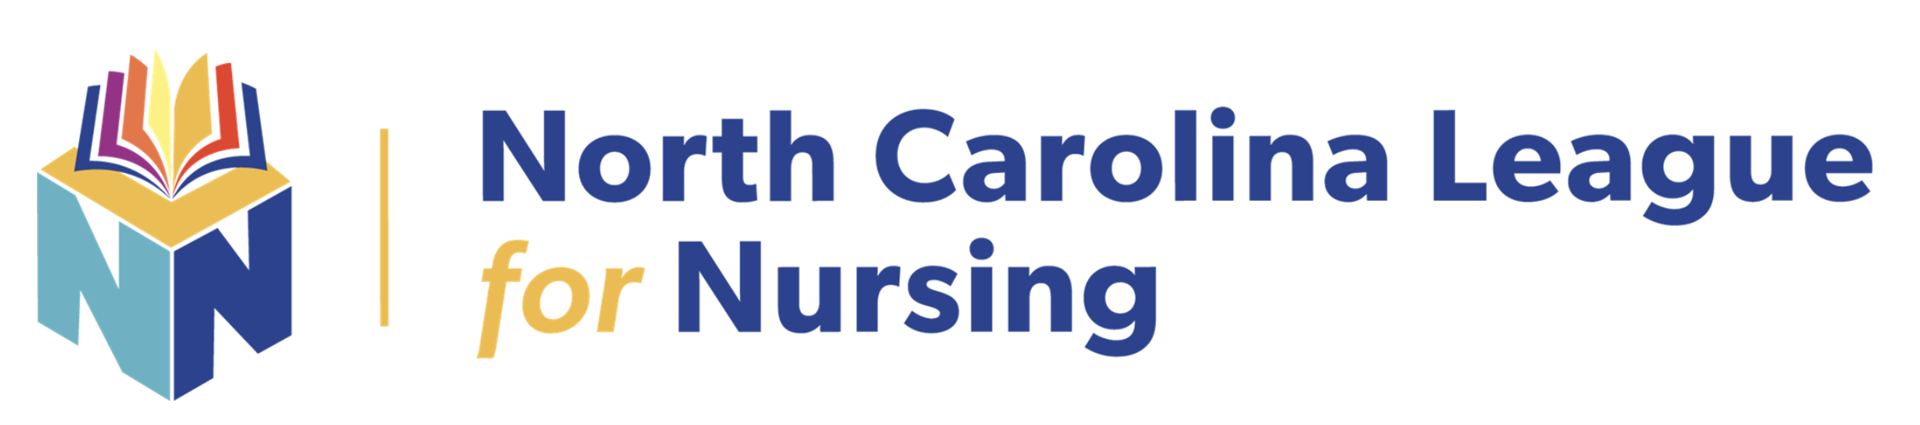 North Carolina League for Nursing - Home